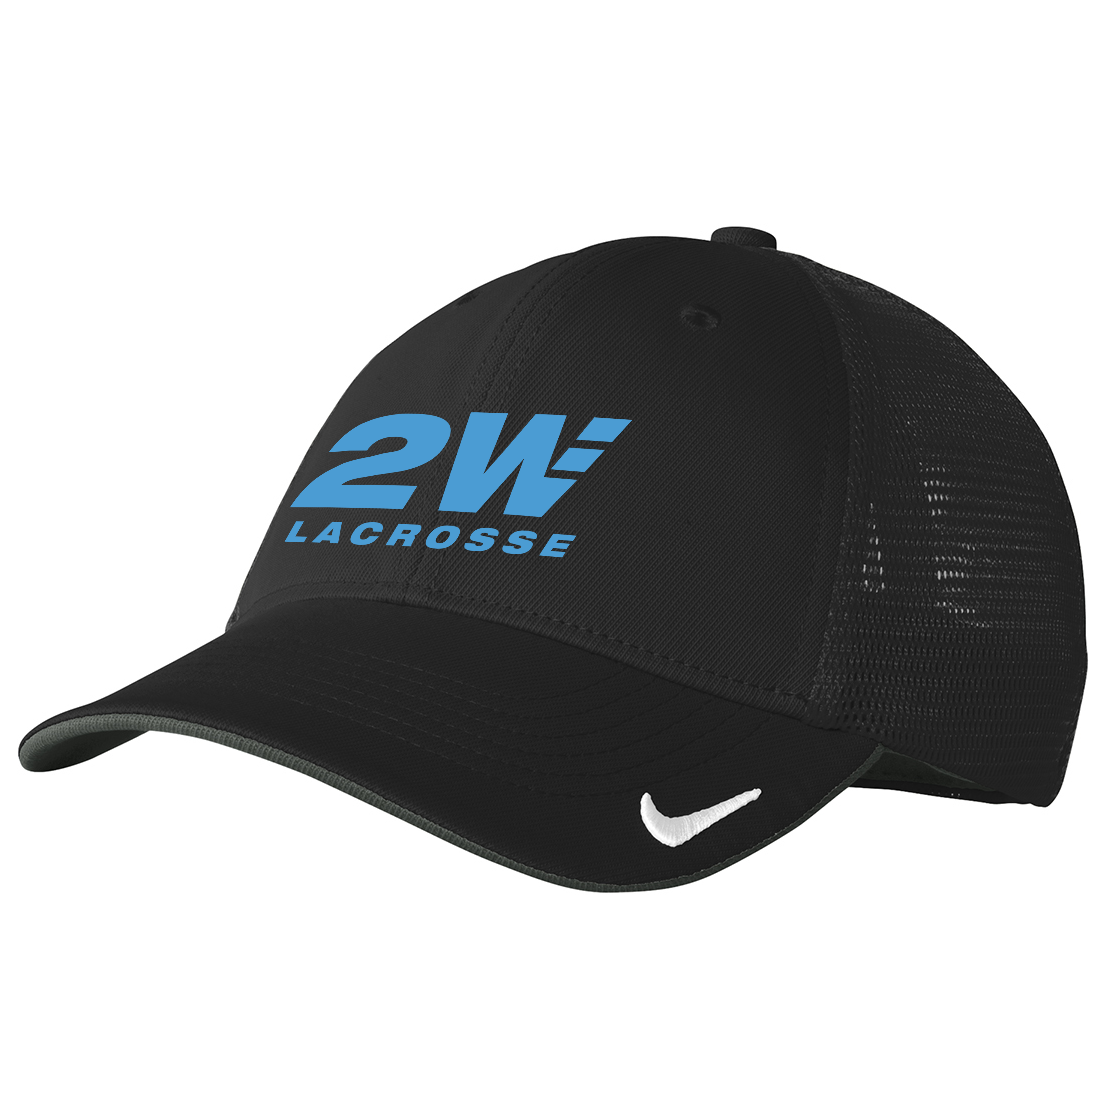 2Way Lacrosse Nike Dri-FIT Mesh Cap